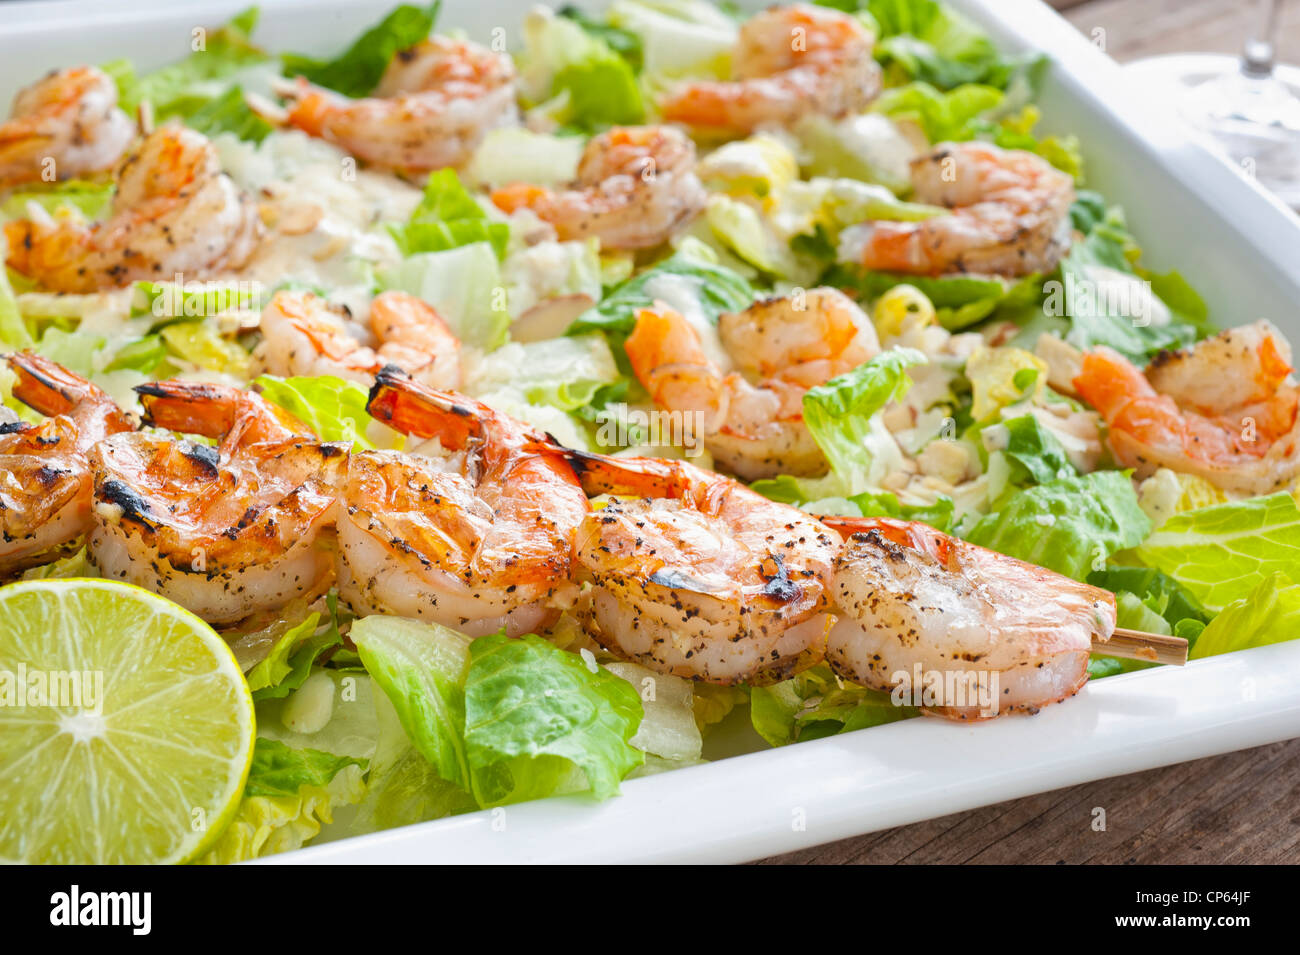 Seafood lettuce salad Stock Photo